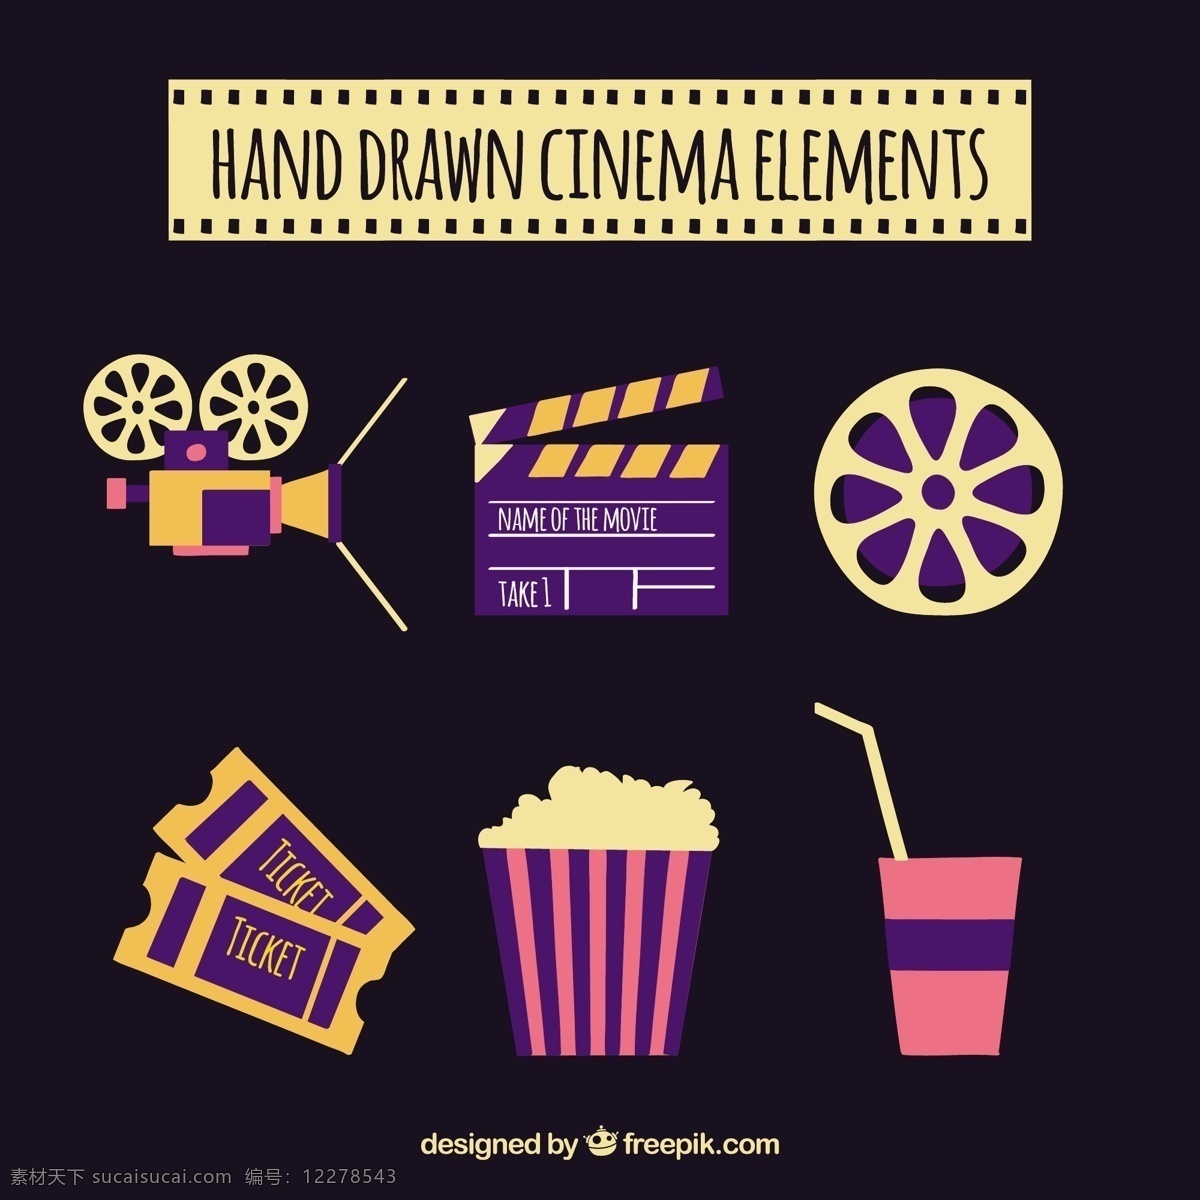 粉红色 紫色 影院 图标 复古 相机 票务 影片 粉红 咖啡 电影 饮料 颜色 平 元素 娱乐 爆米花 显示 剧院 电影元素